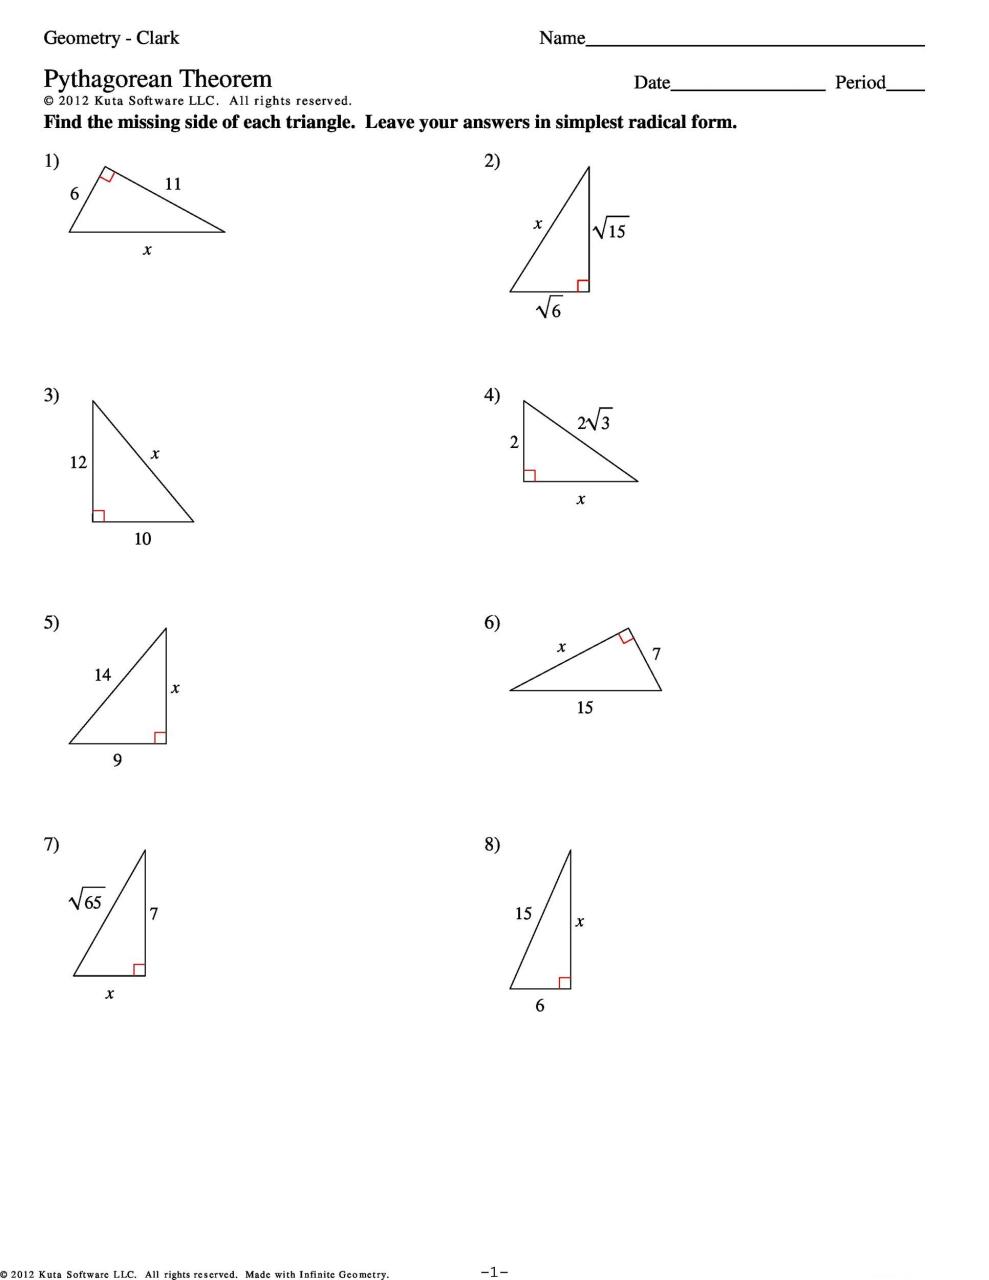 Libre teorema de Pitágoras 13